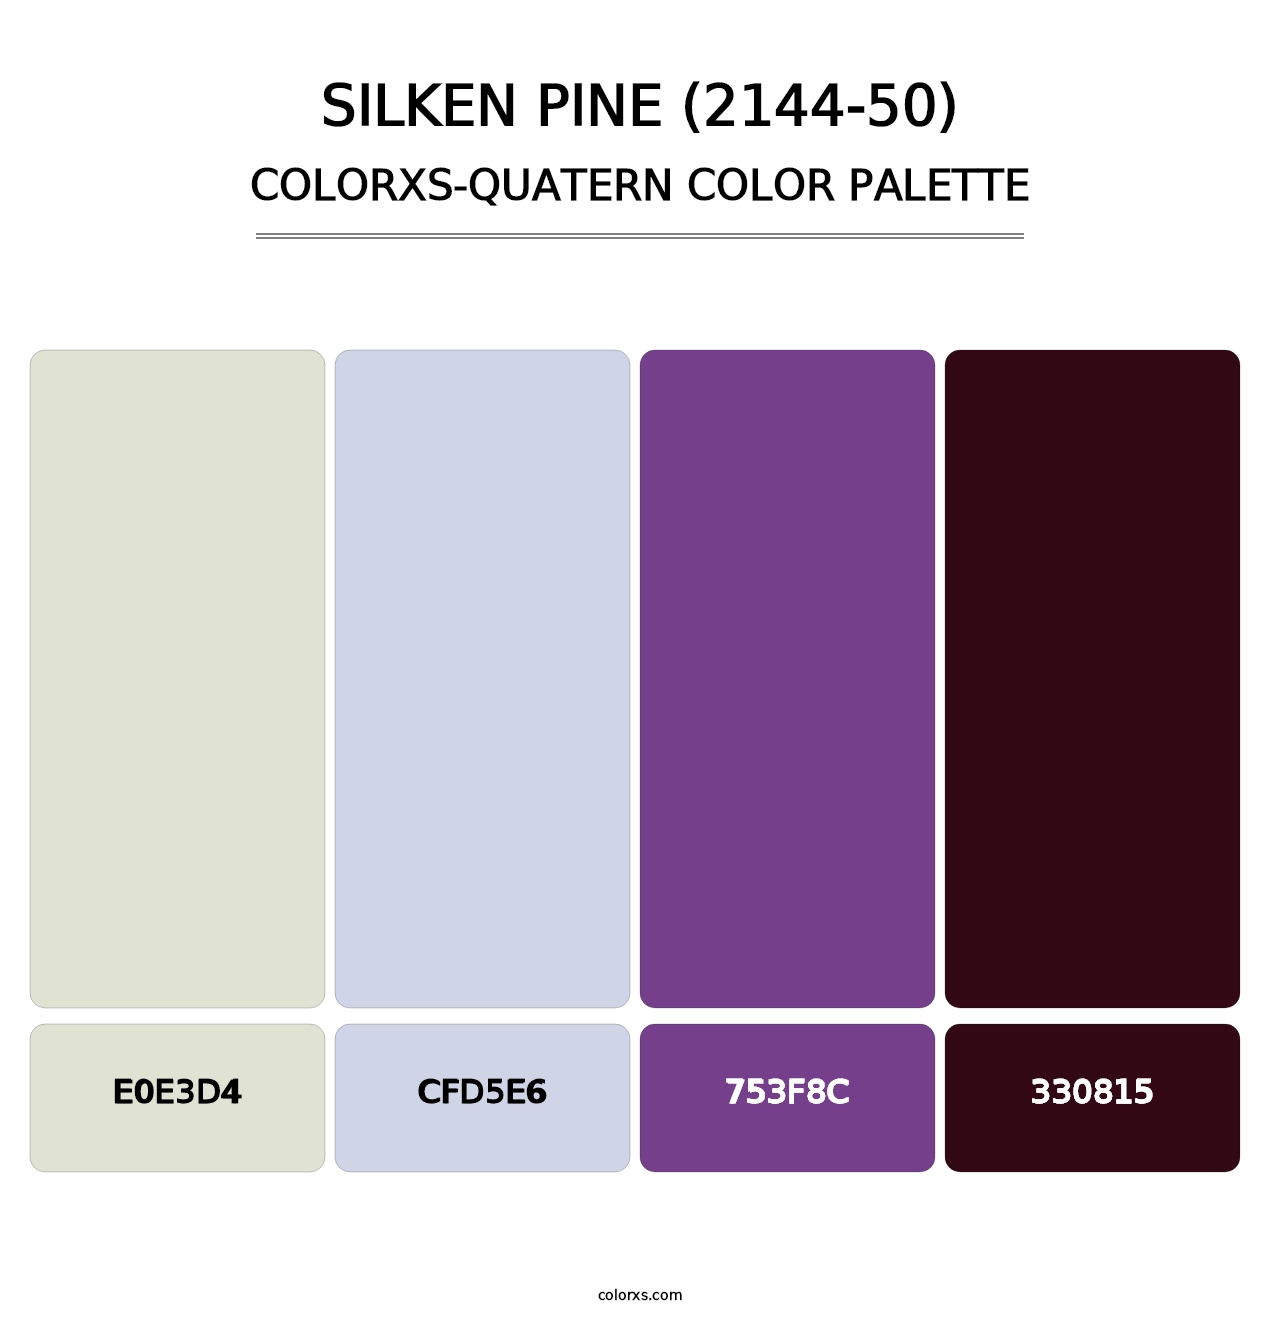 Silken Pine (2144-50) - Colorxs Quatern Palette